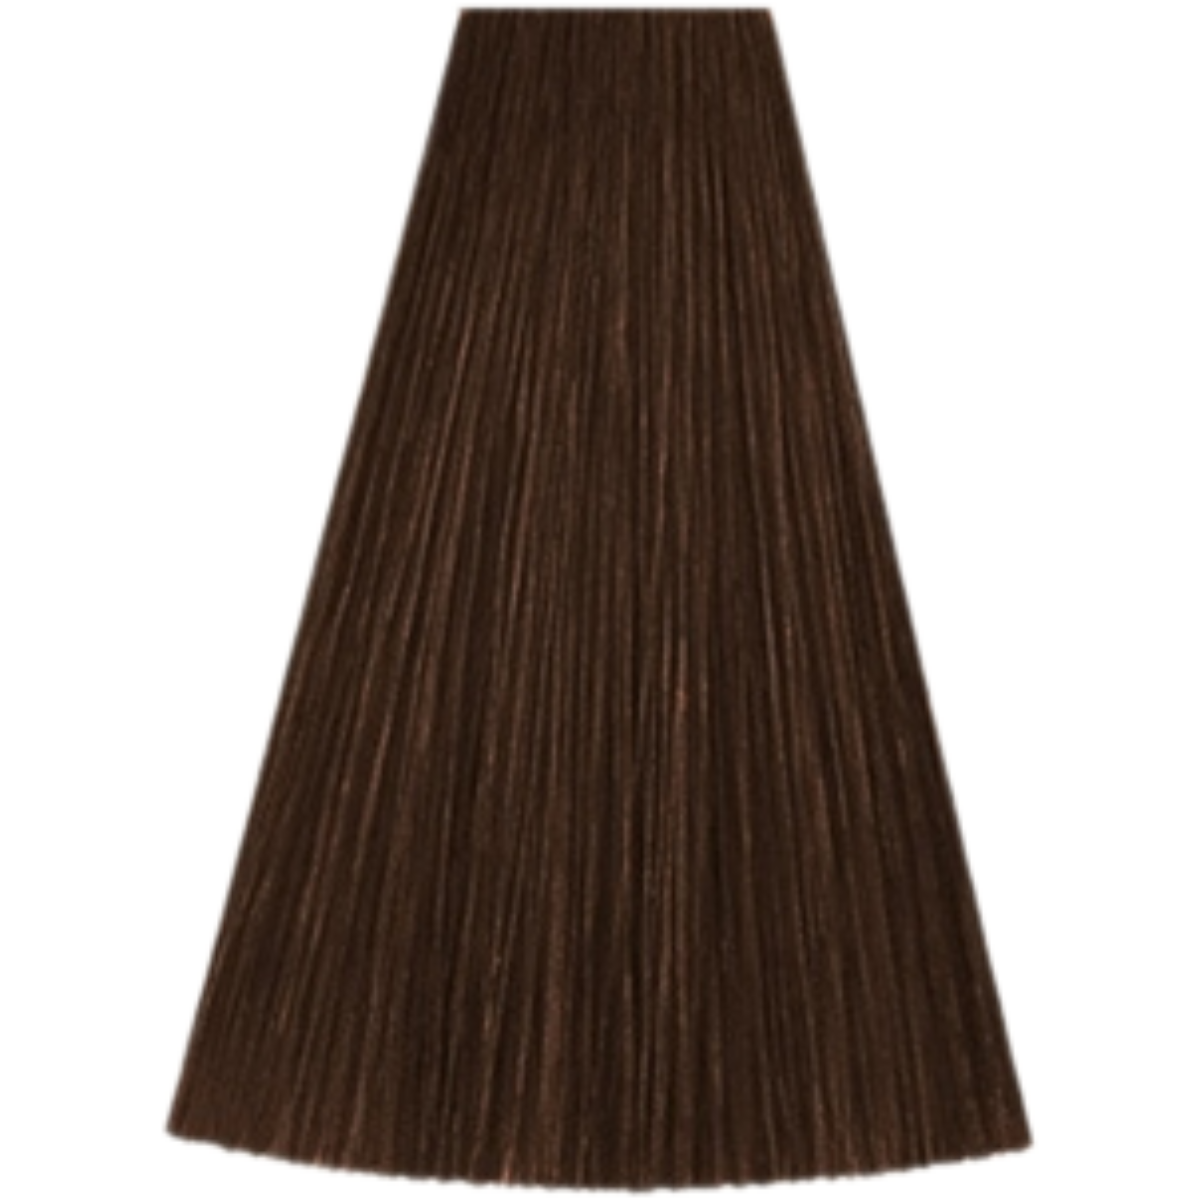 צבע שיער גוון 6/37 DARK BLONDE GOLD BROWN קאדוס KADUS צבע לשיער 60 גרם